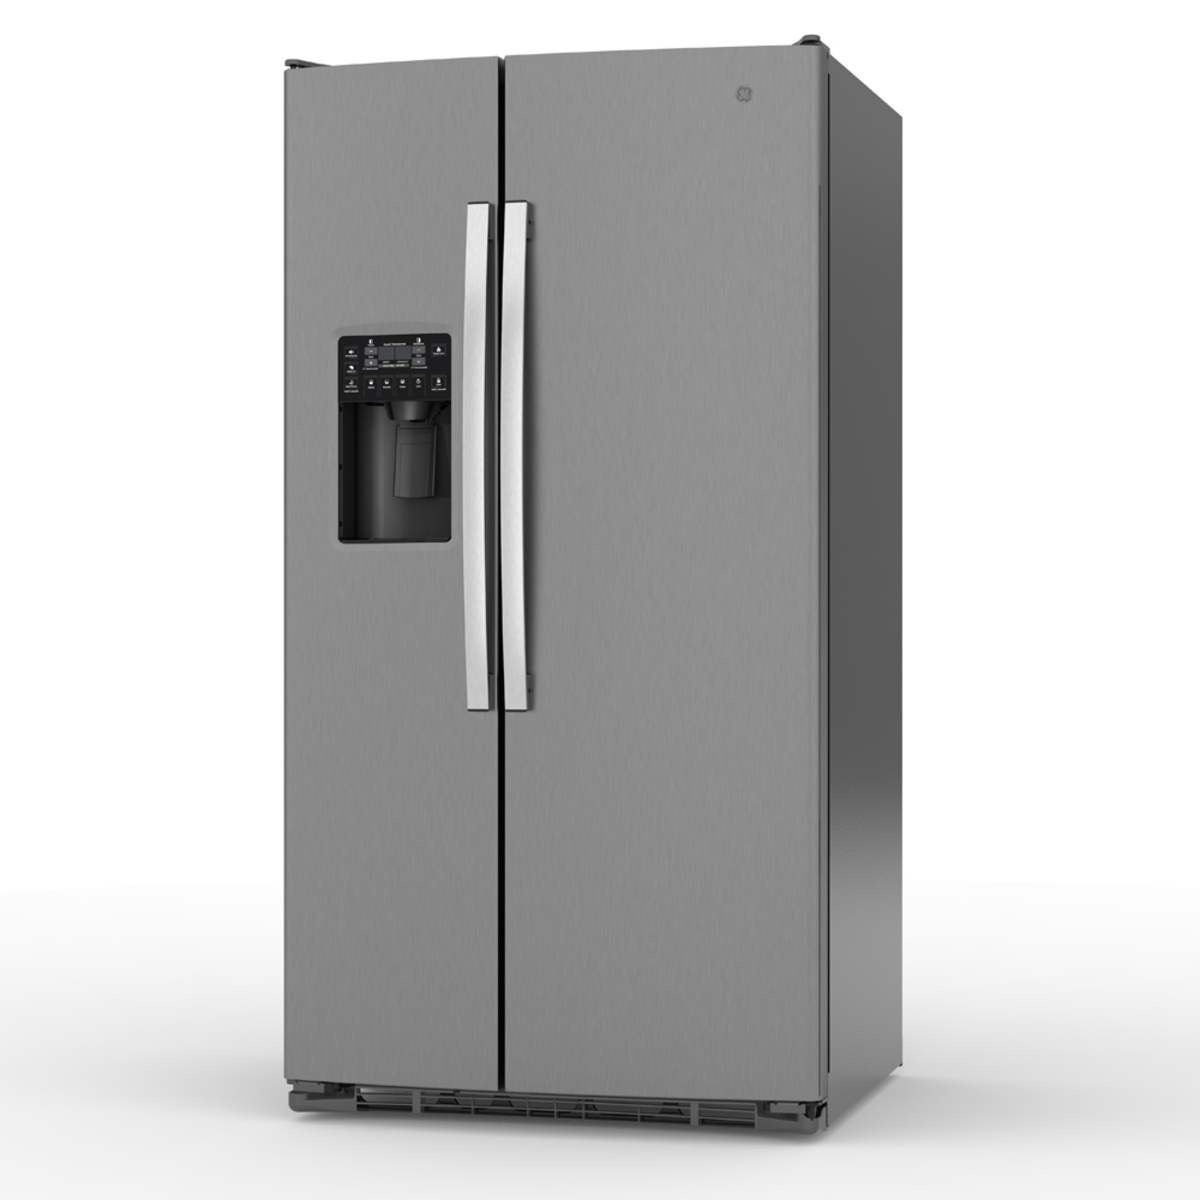 Gabinete Extraible lateral izquierdo refrigerador. Gabinete superior  refrigerador c/amortiguador